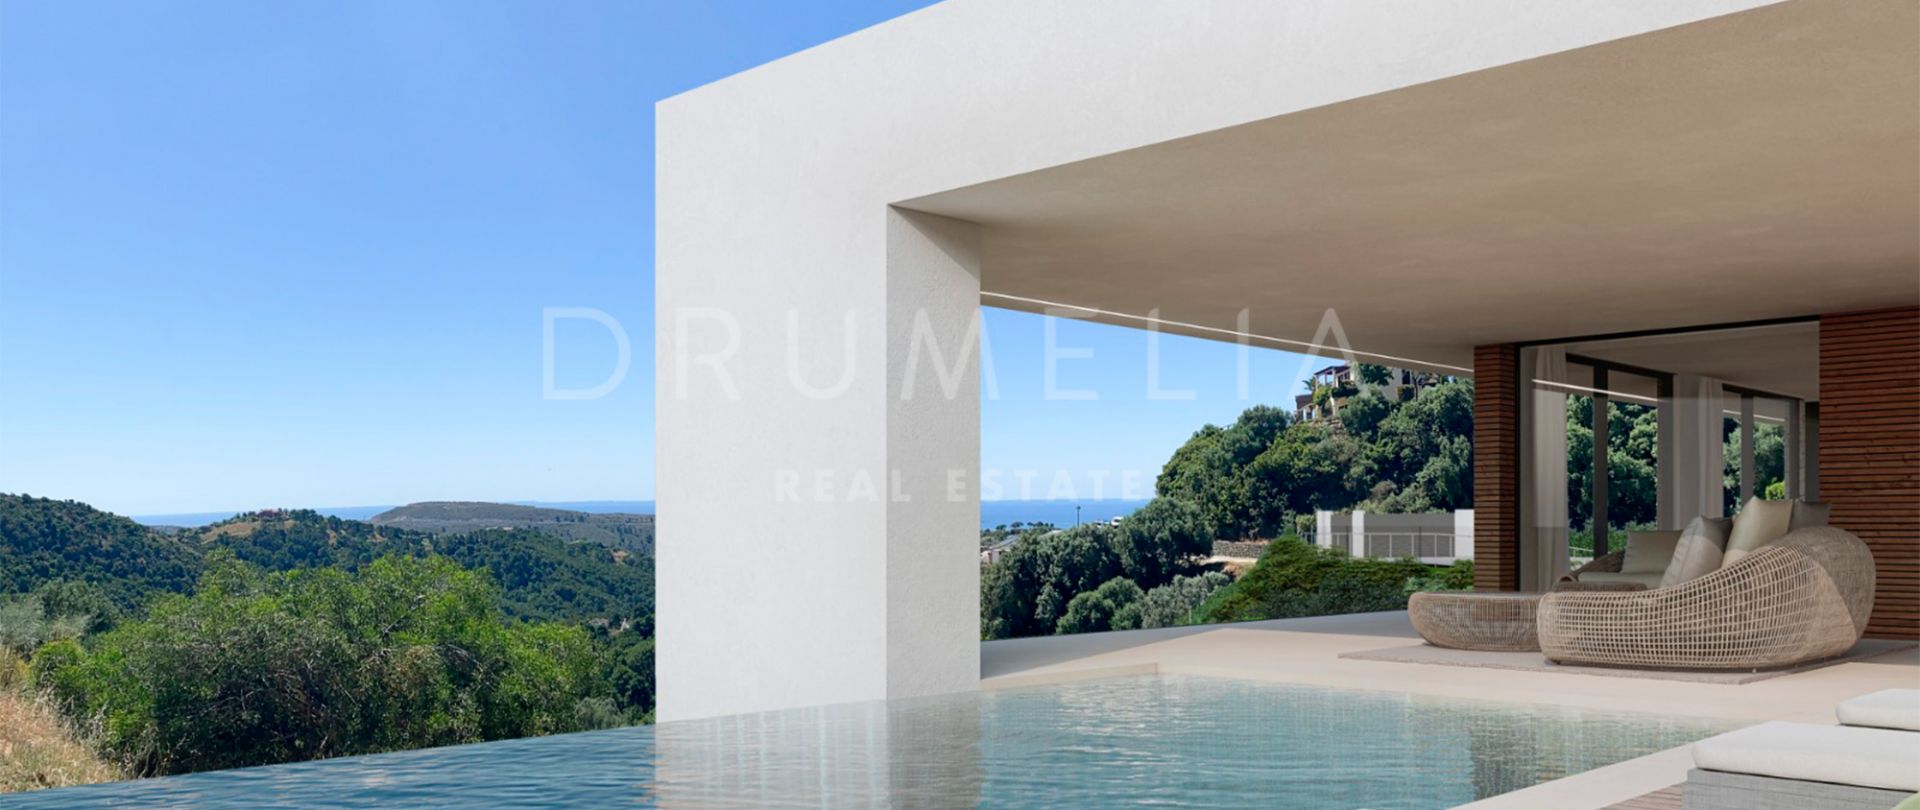 Uitzonderlijk project van moderne villa met panoramisch uitzicht op zee in Monte Mayor Benahavís